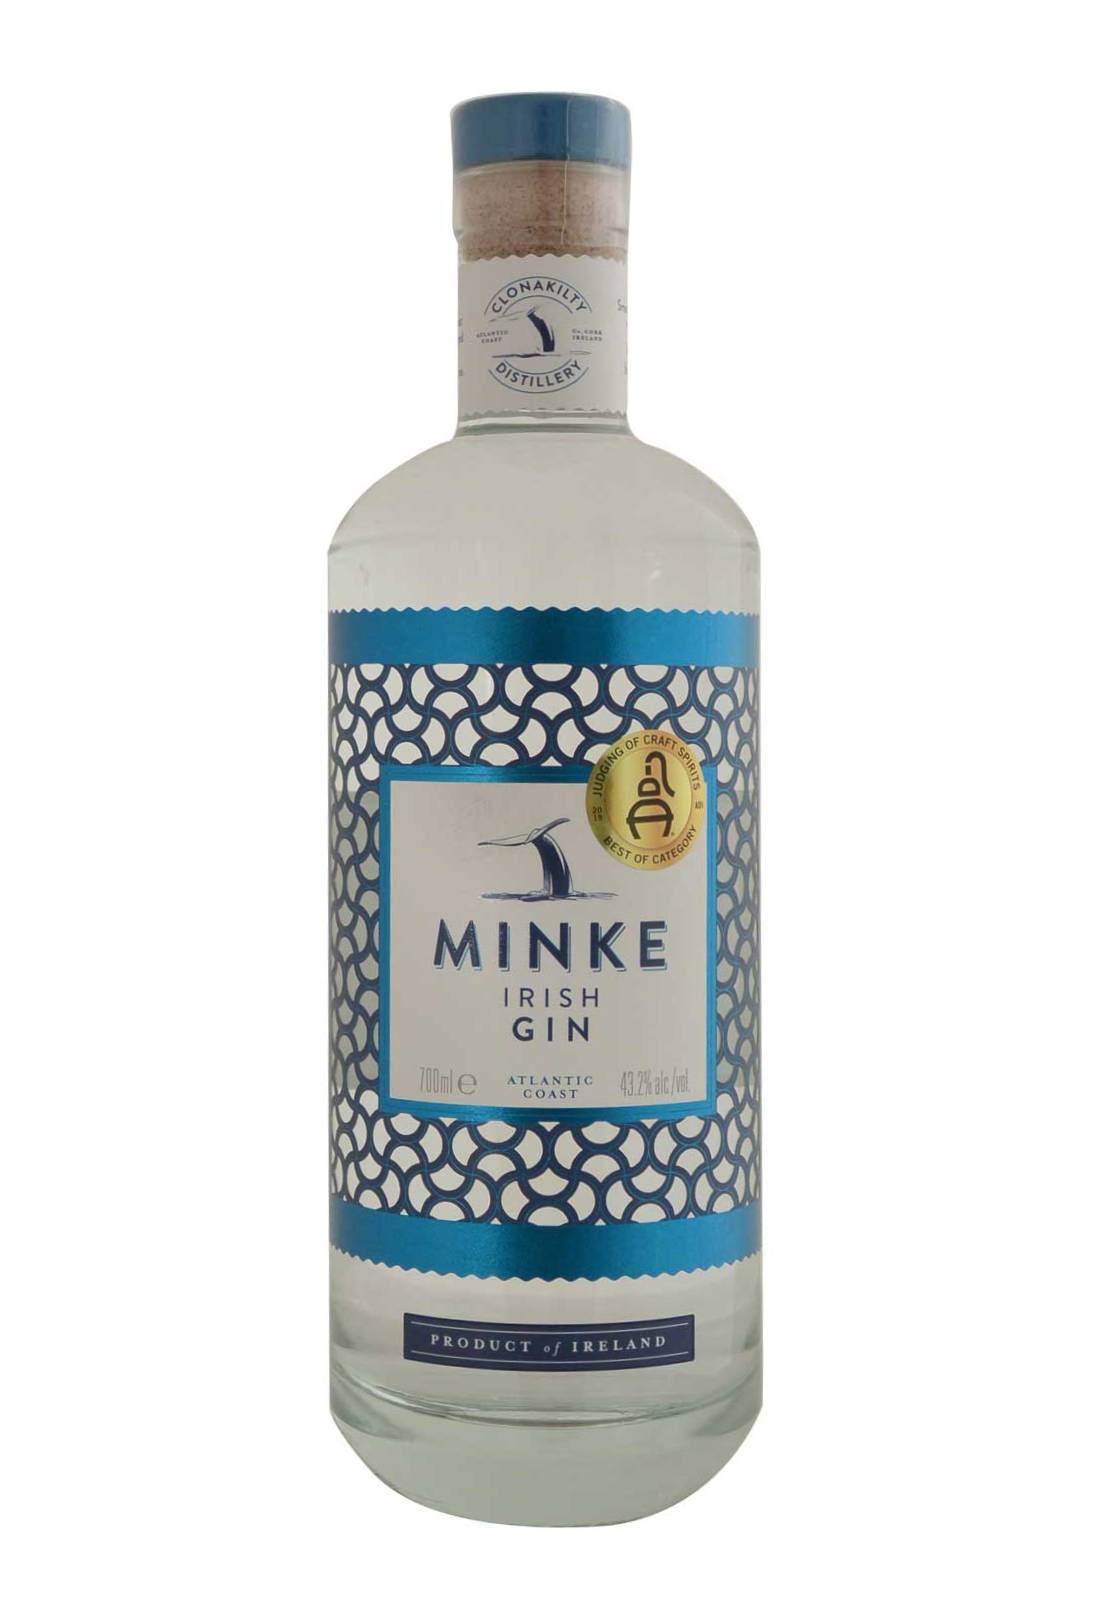 Minke Gin